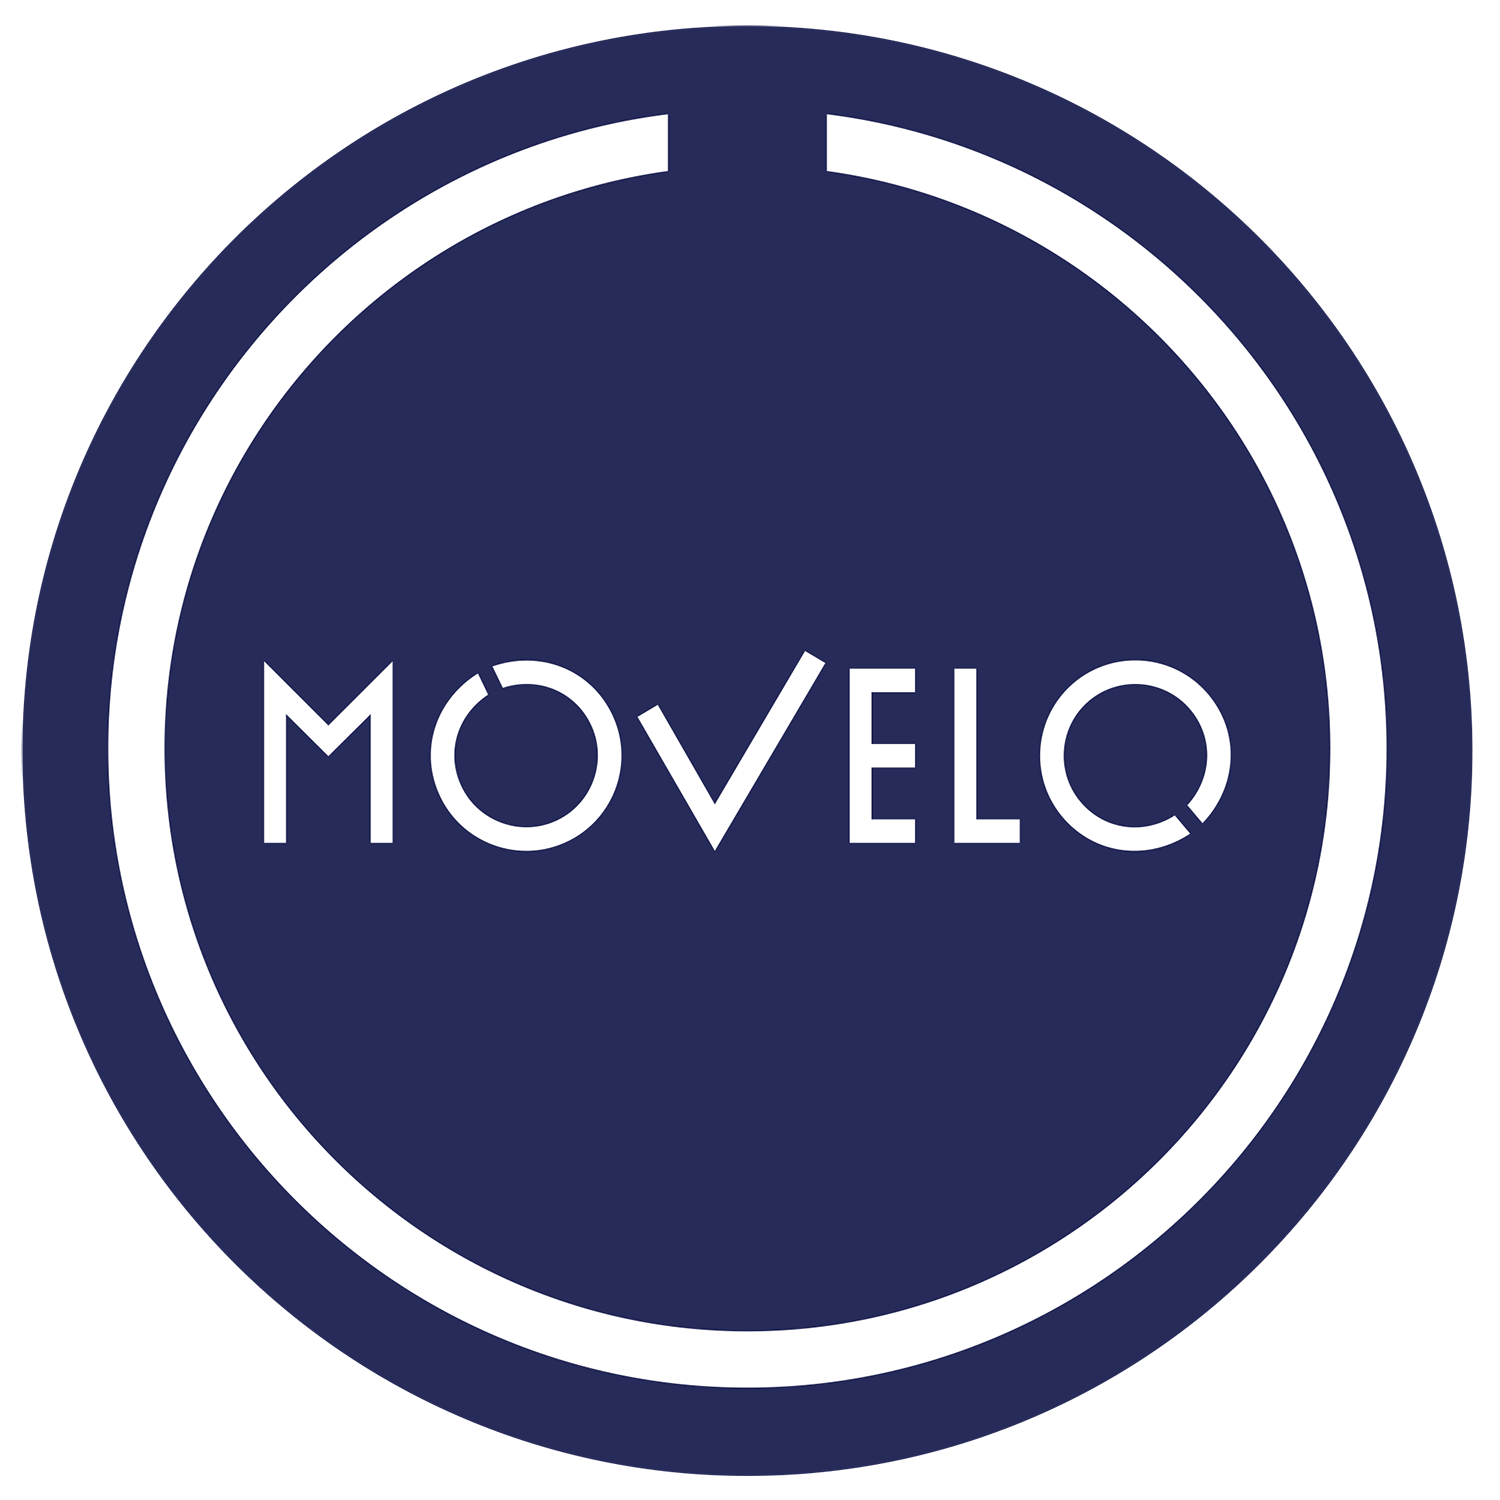 Meewerkstage Amsterdam Movelo